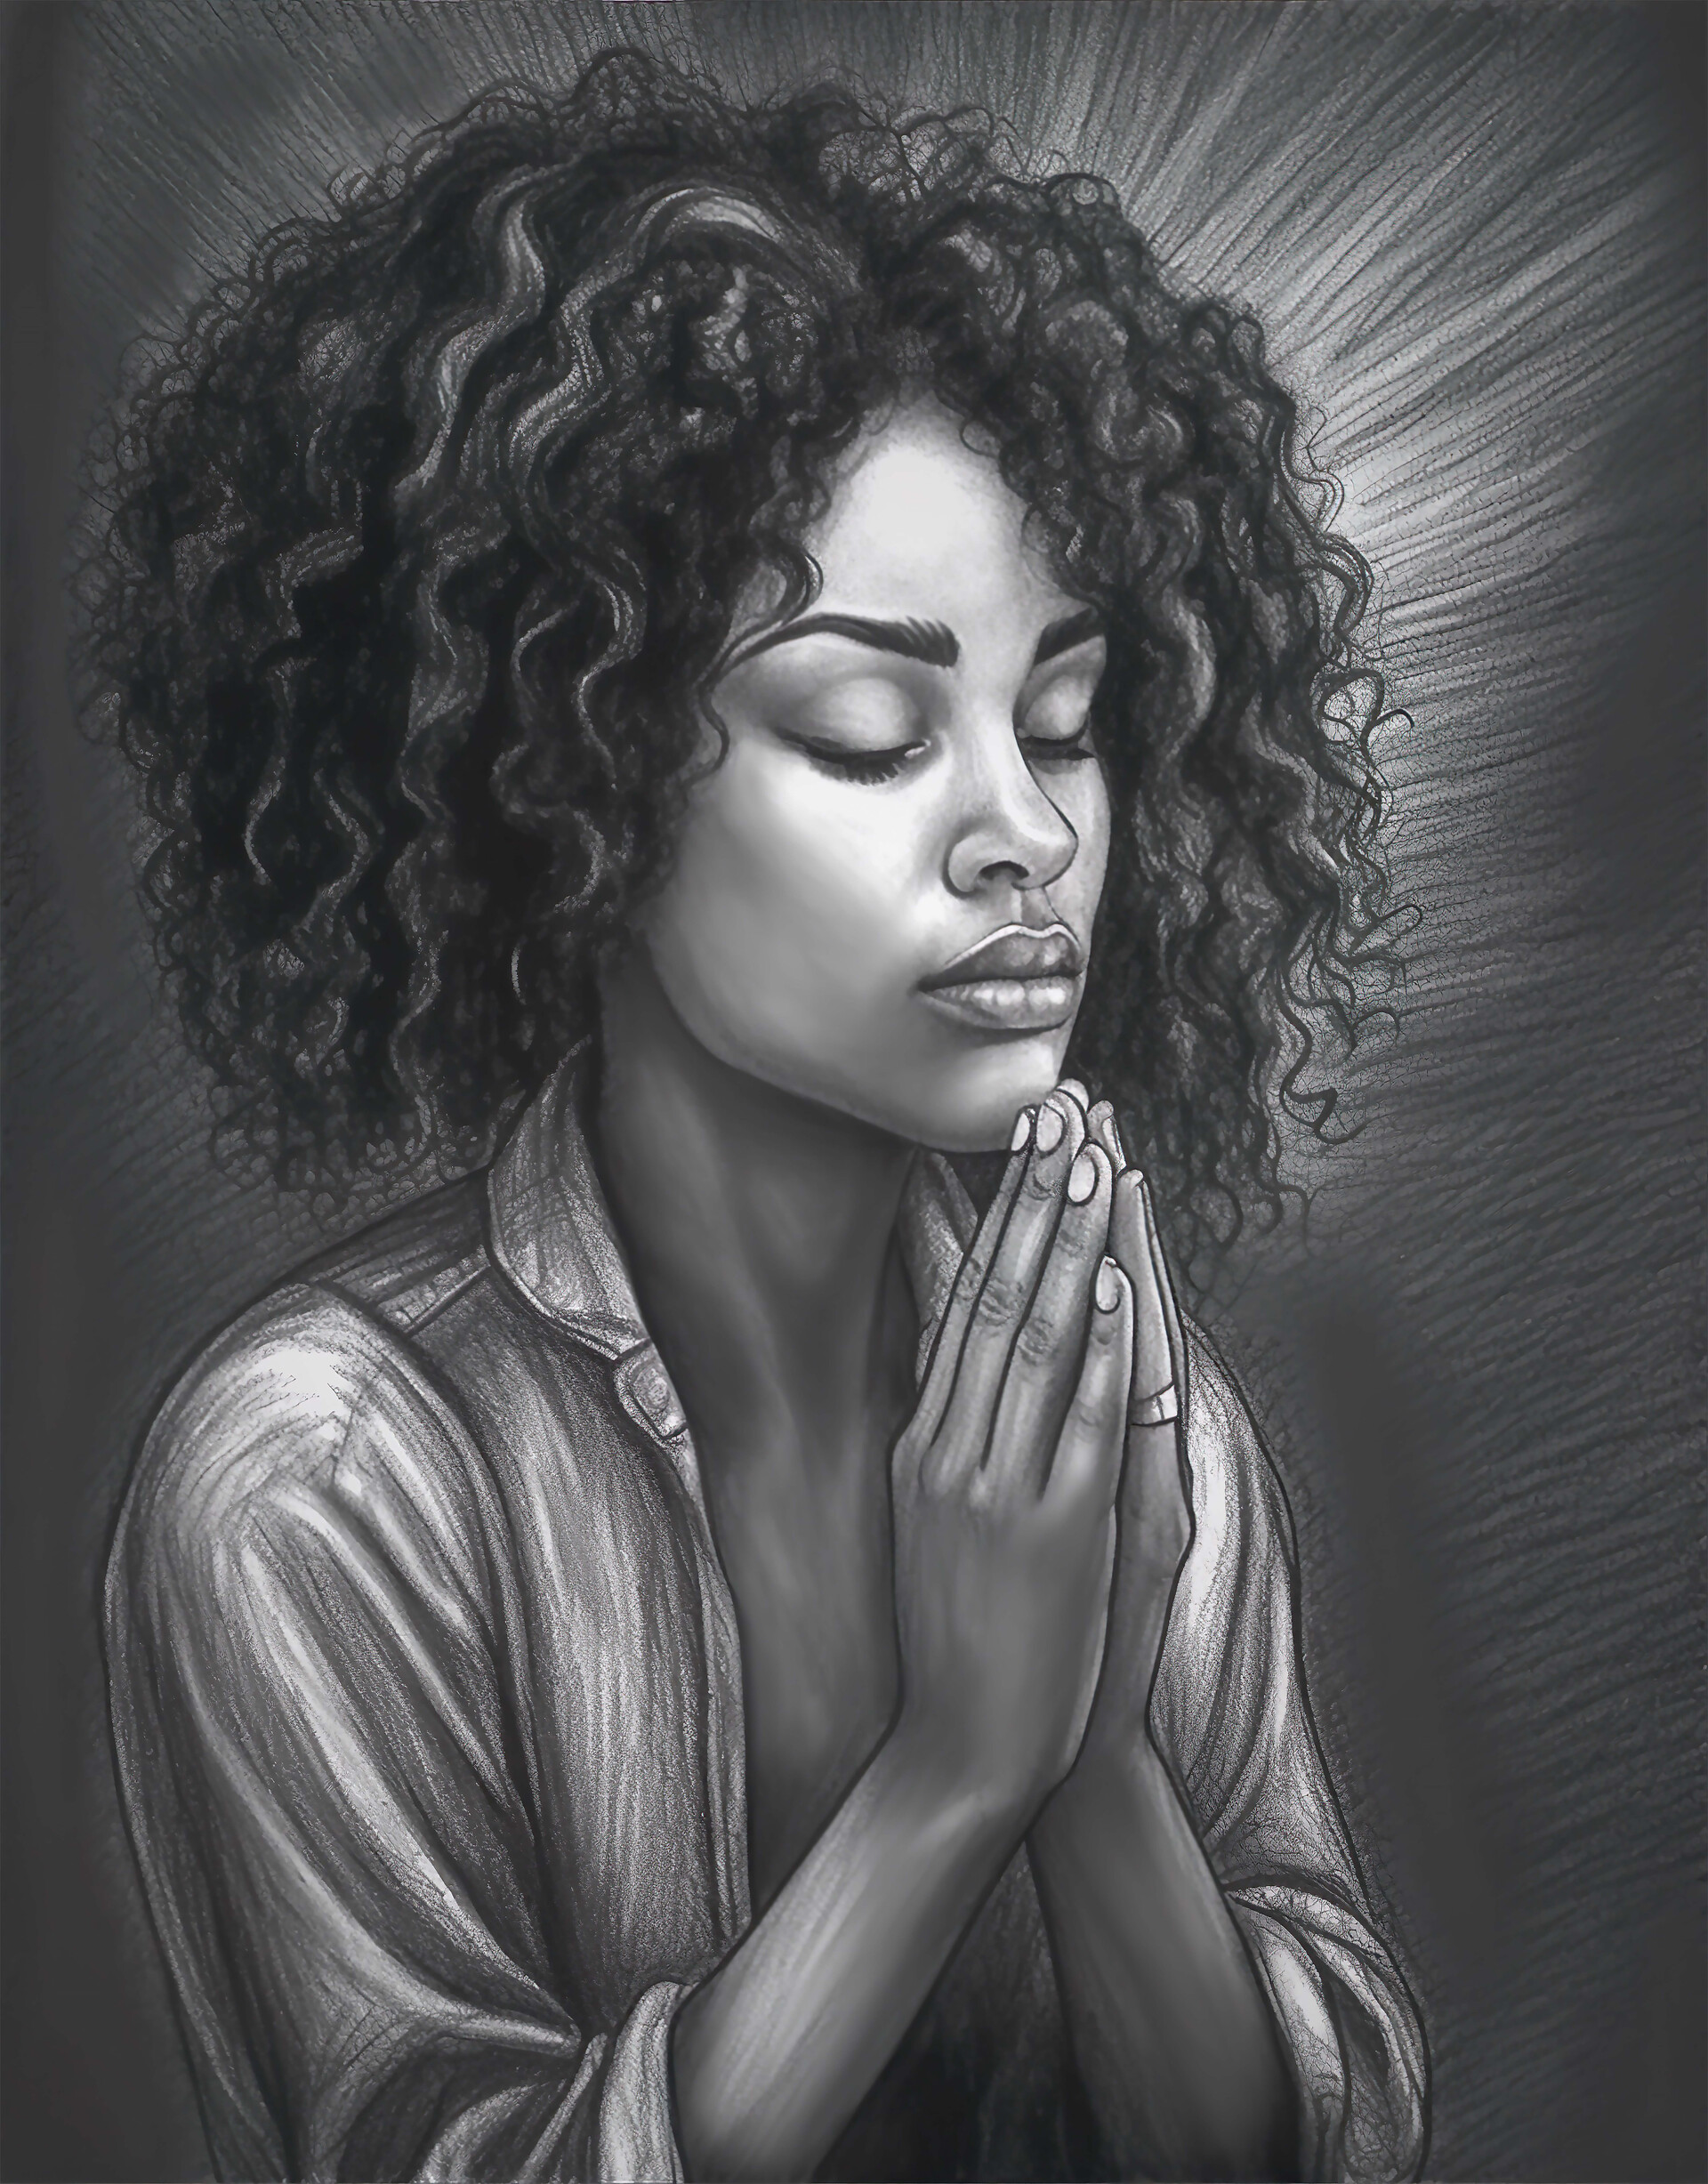 ArtStation - Black praying woman